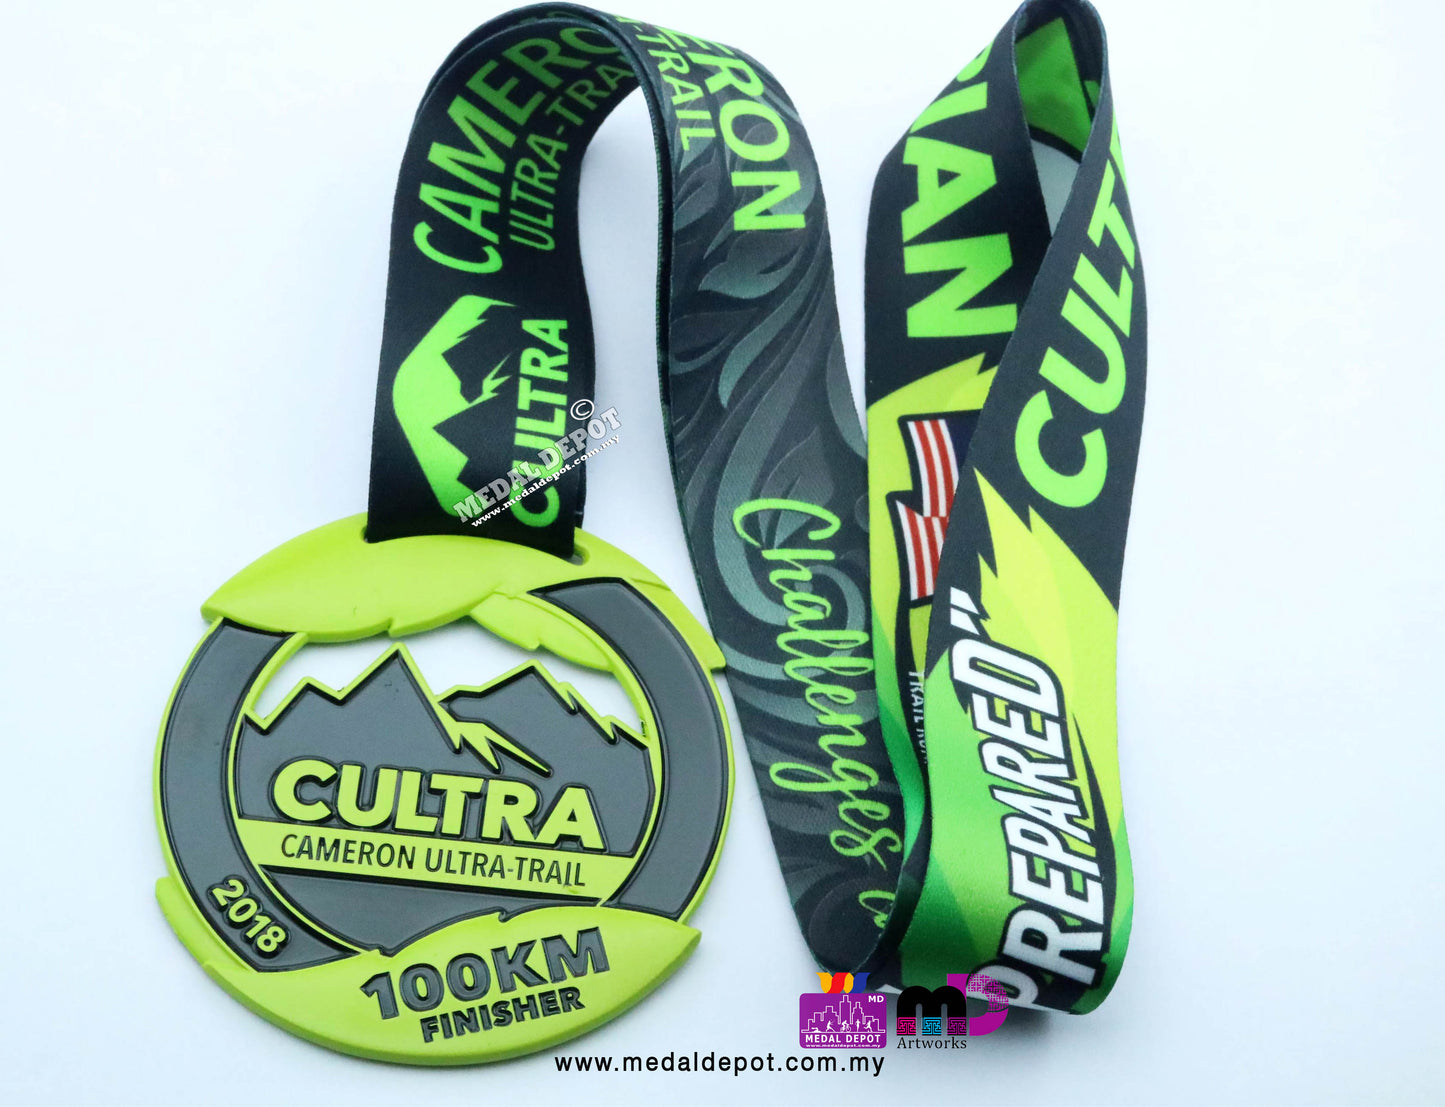 Cameron Ultra Trail 2018 CULTRA